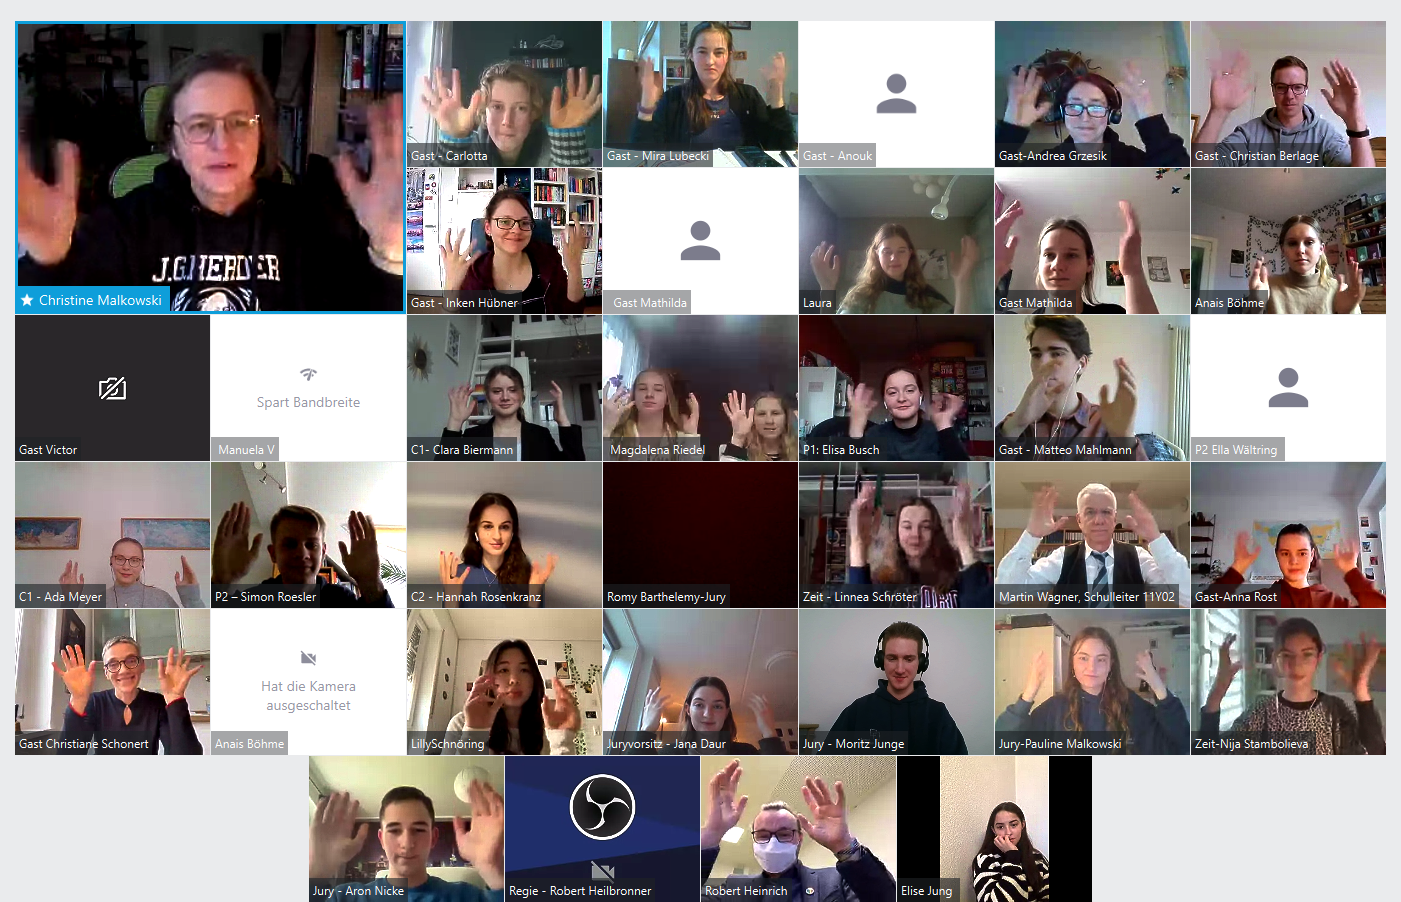 Bildschirmfoto der Videokonferenz der Veranstaltung mit Fotokacheln der Teilnehnenden, die mit den Händeln wedeln, um den Applaus zu ersetzen